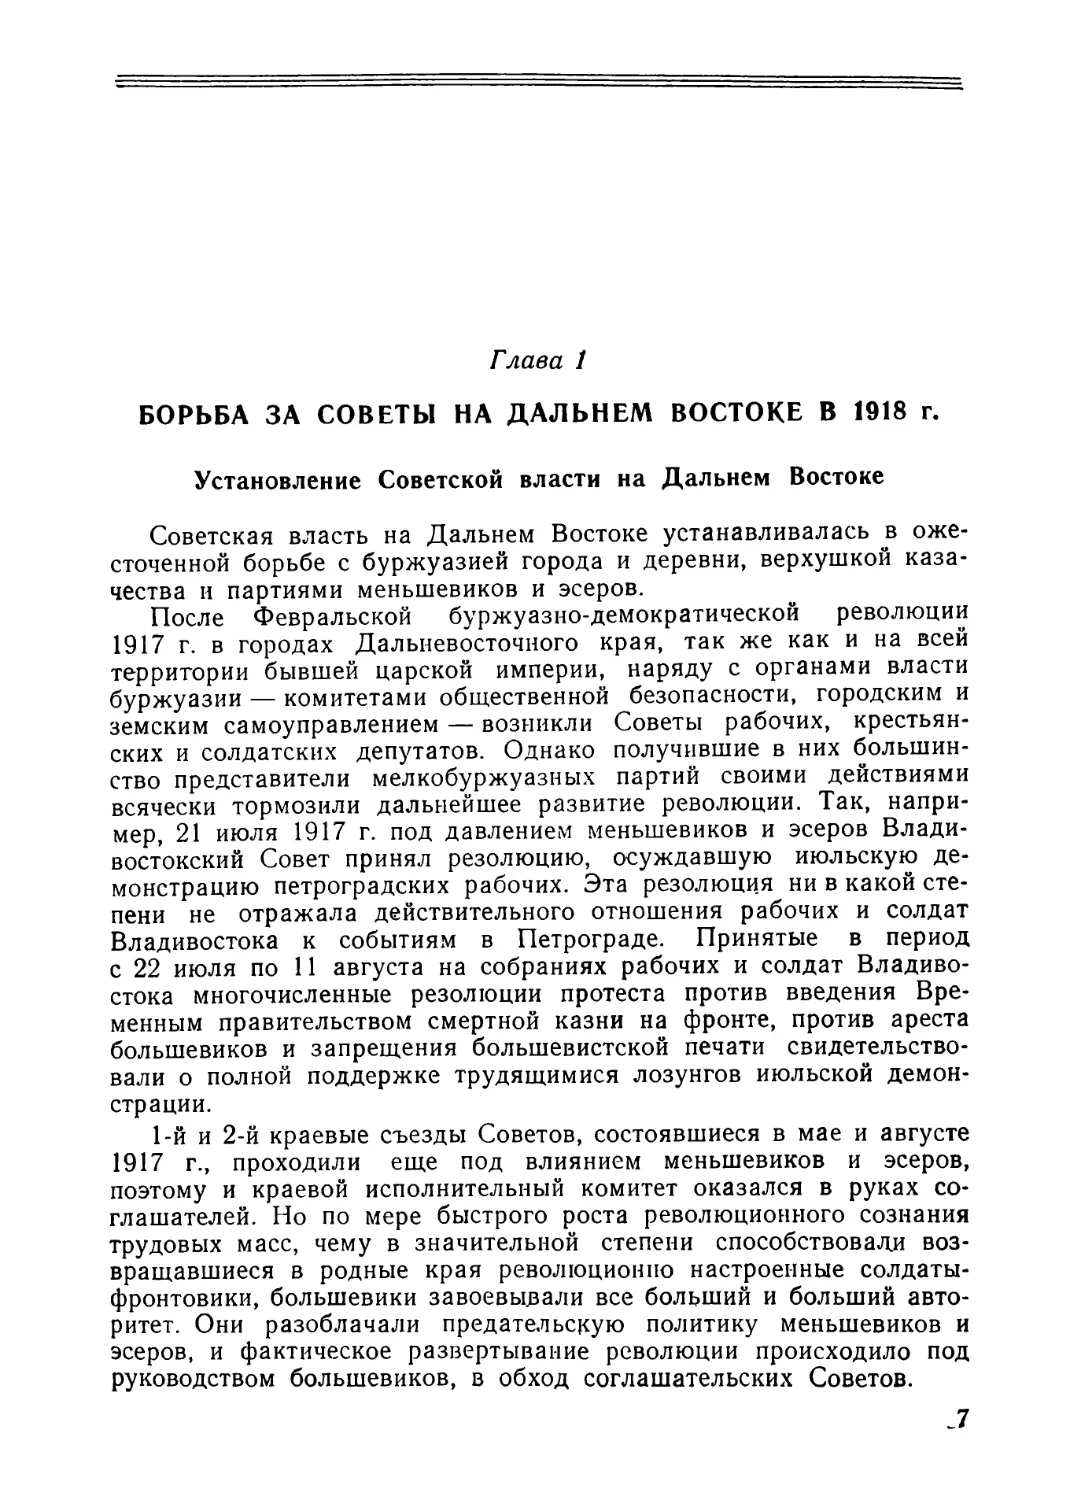 Глава 1. Борьба за Советы на Дальнем Востоке в 1918 г.